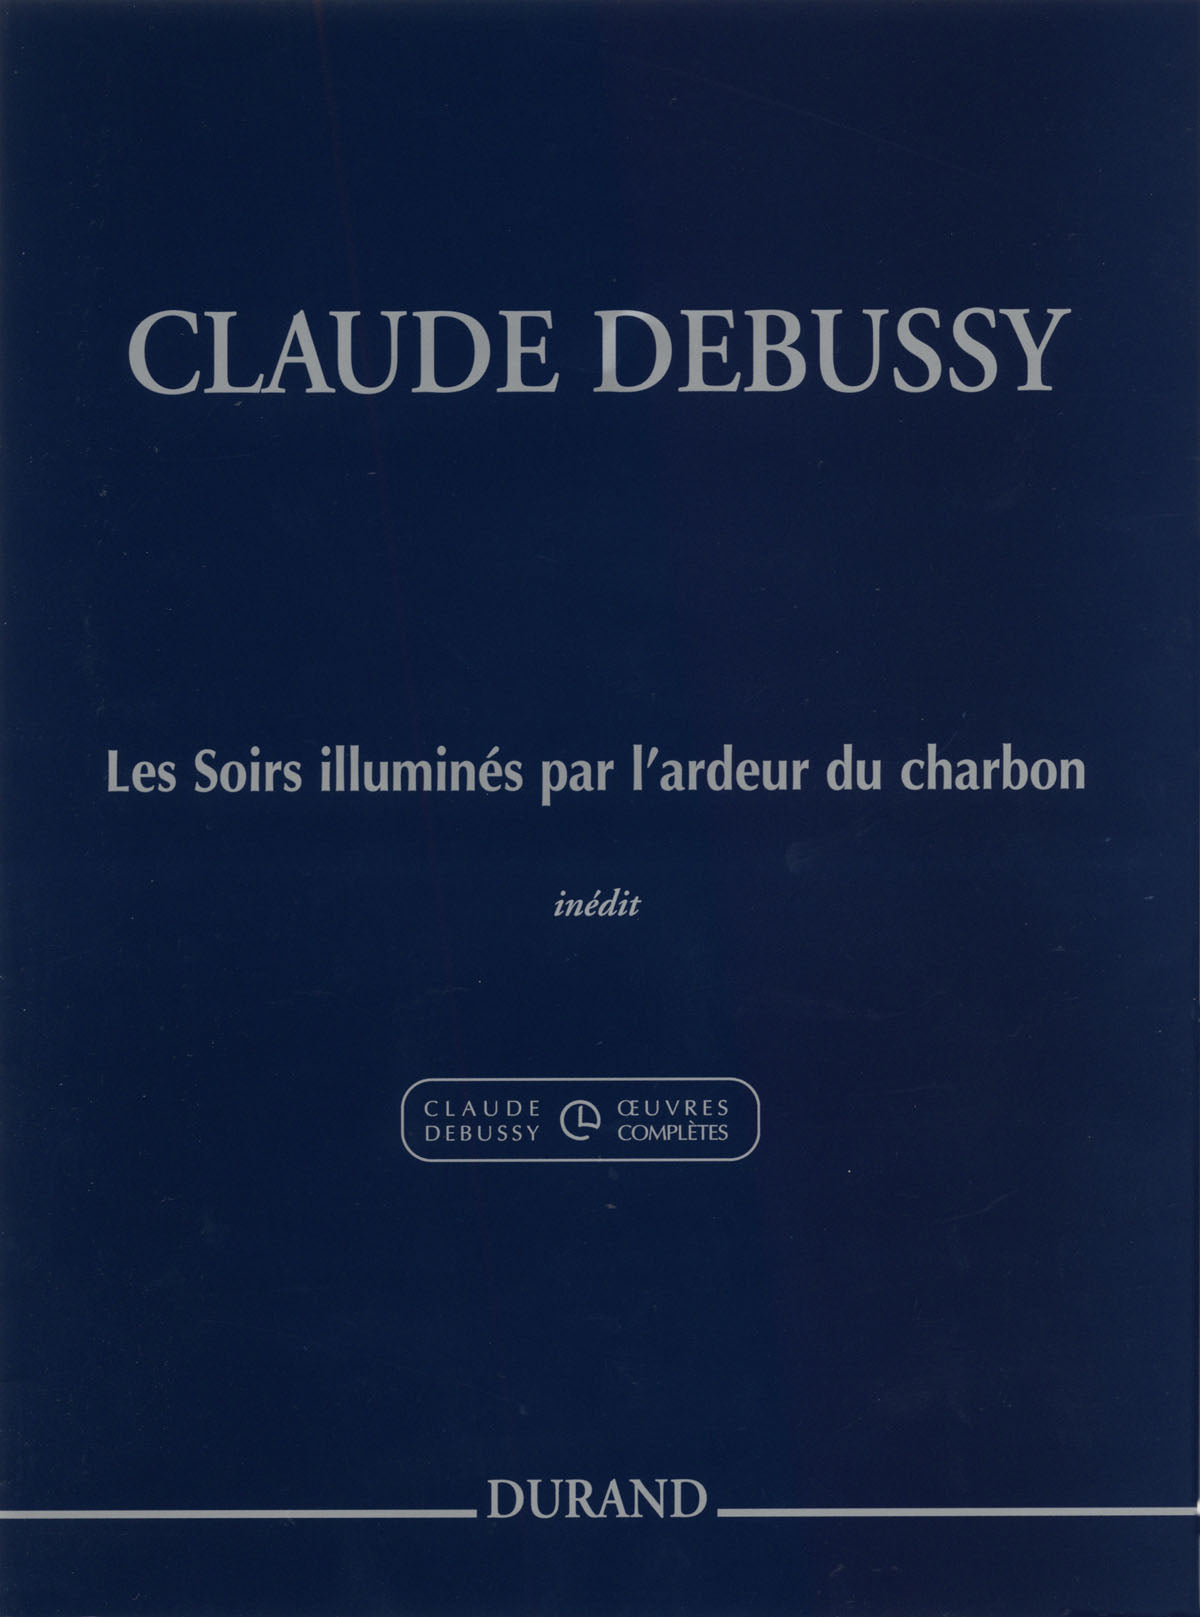 Debussy: Les Soirs illuminés par l'ardeur du charbon